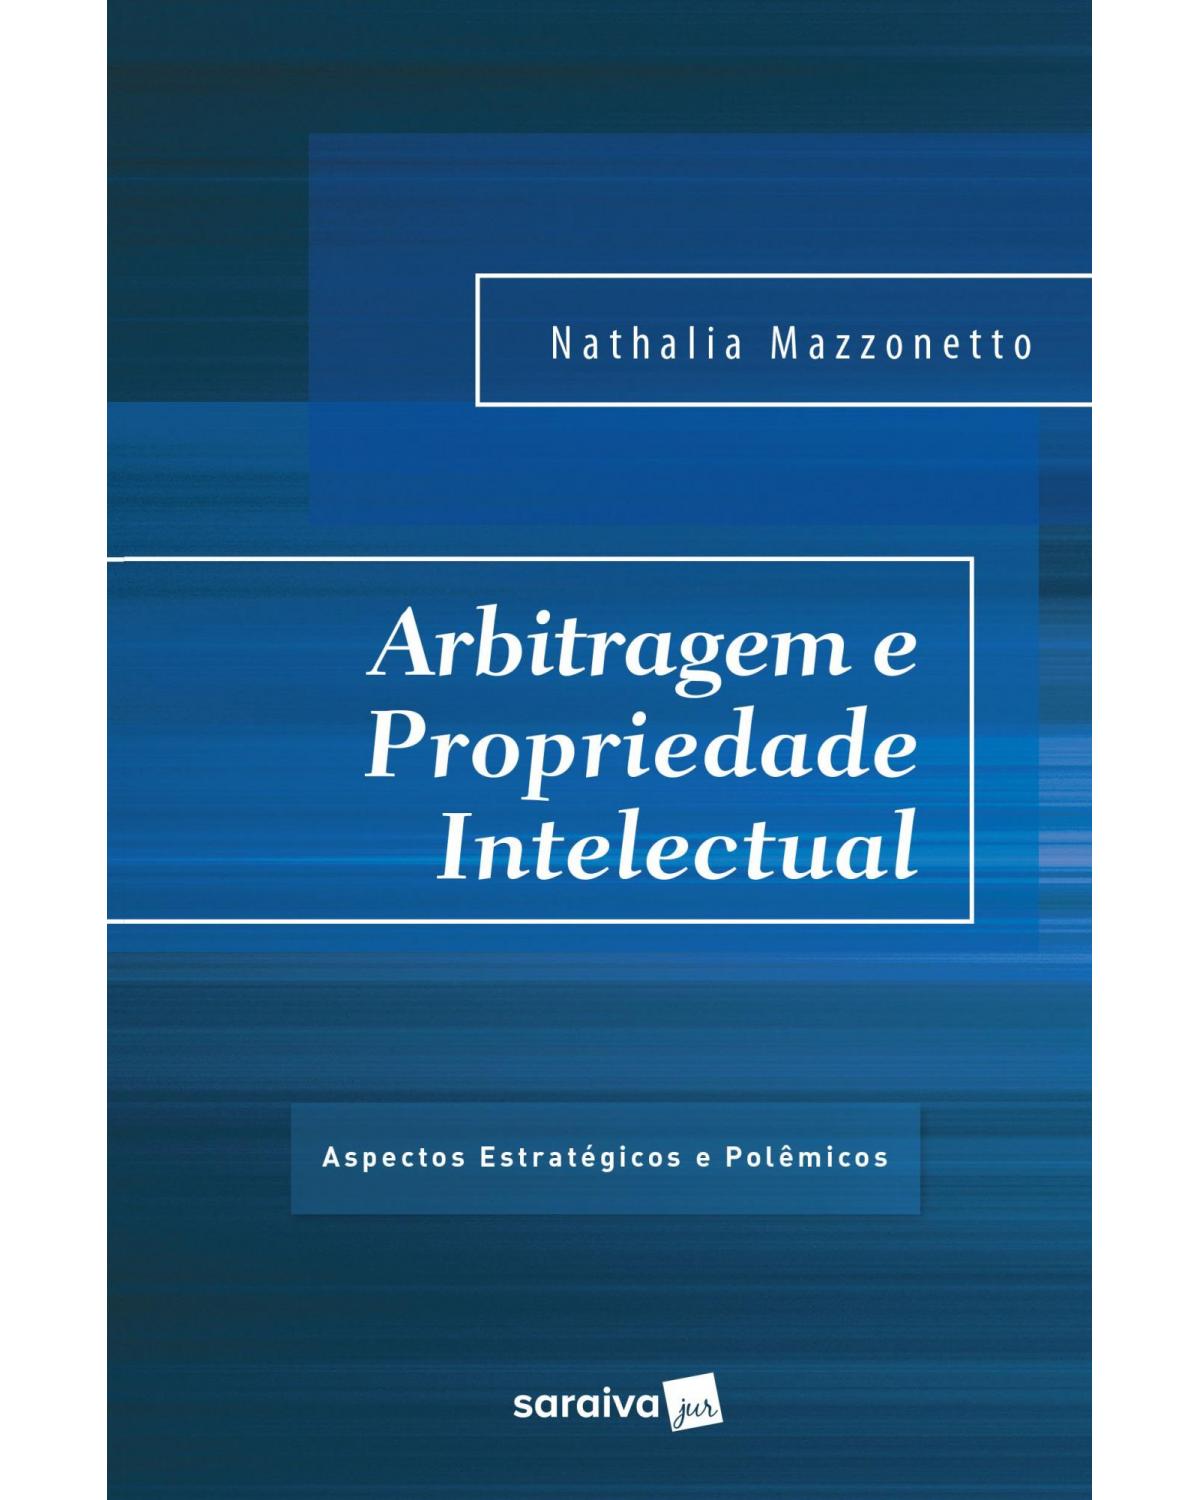 Arbitragem e propriedade intelectual - aspectos estratégicos e polêmicos - 1ª Edição | 2017